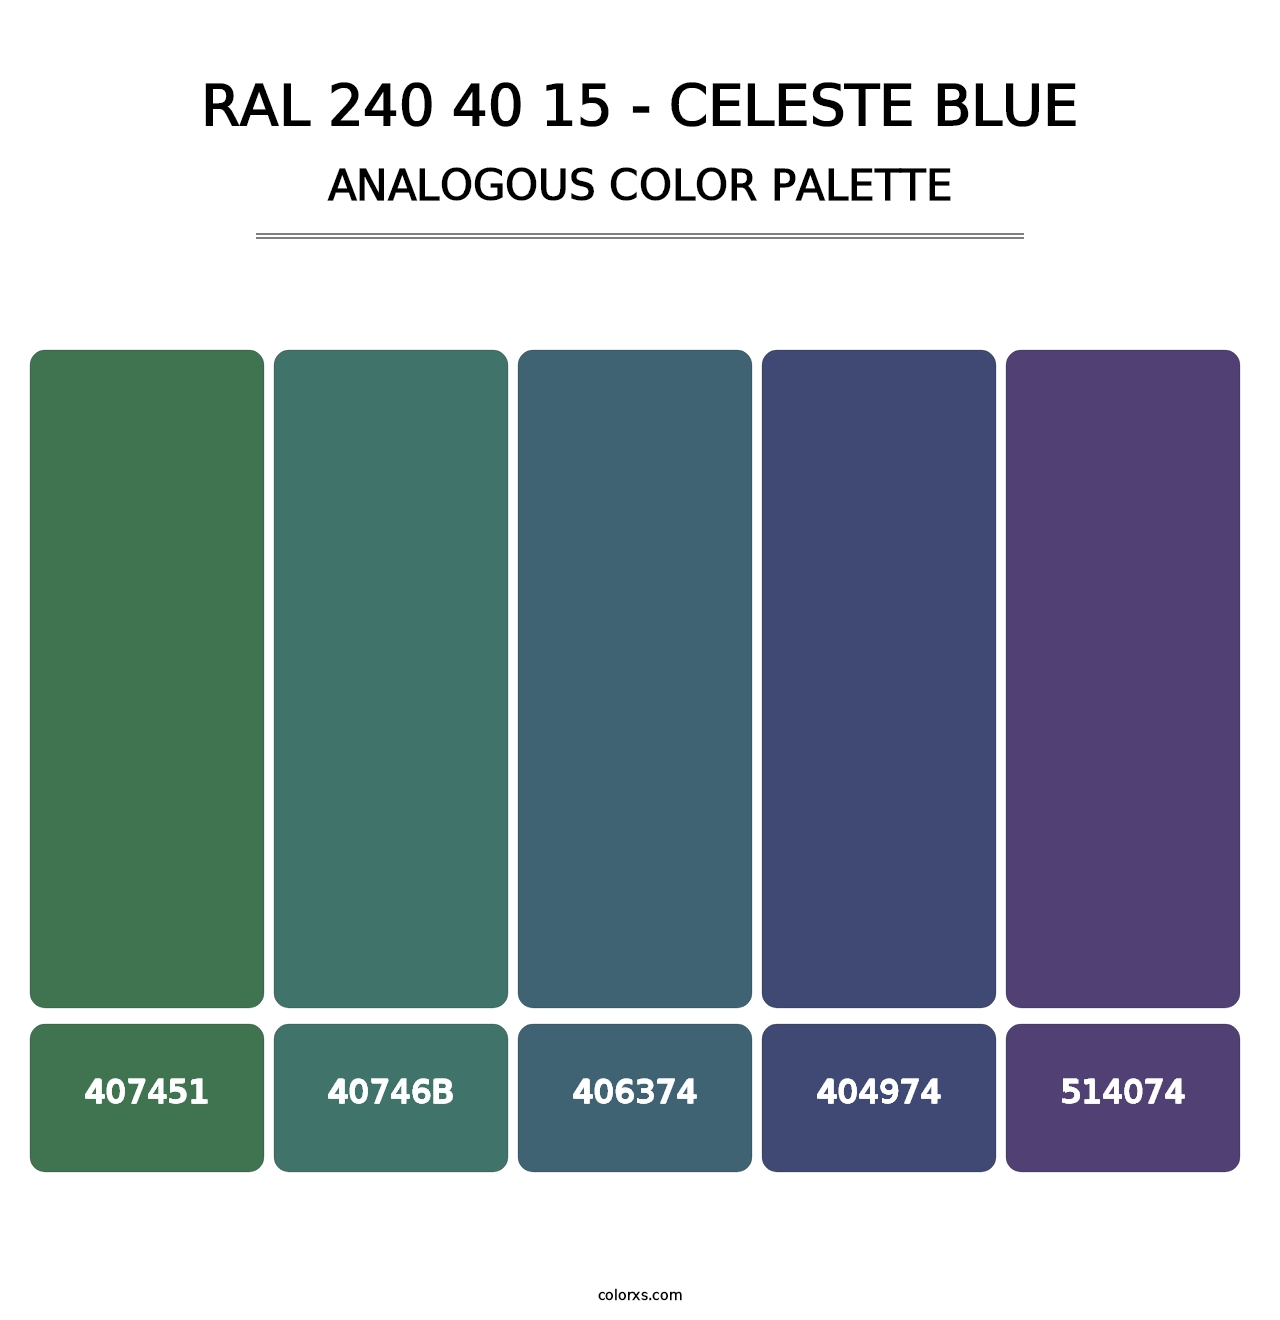 RAL 240 40 15 - Celeste Blue - Analogous Color Palette